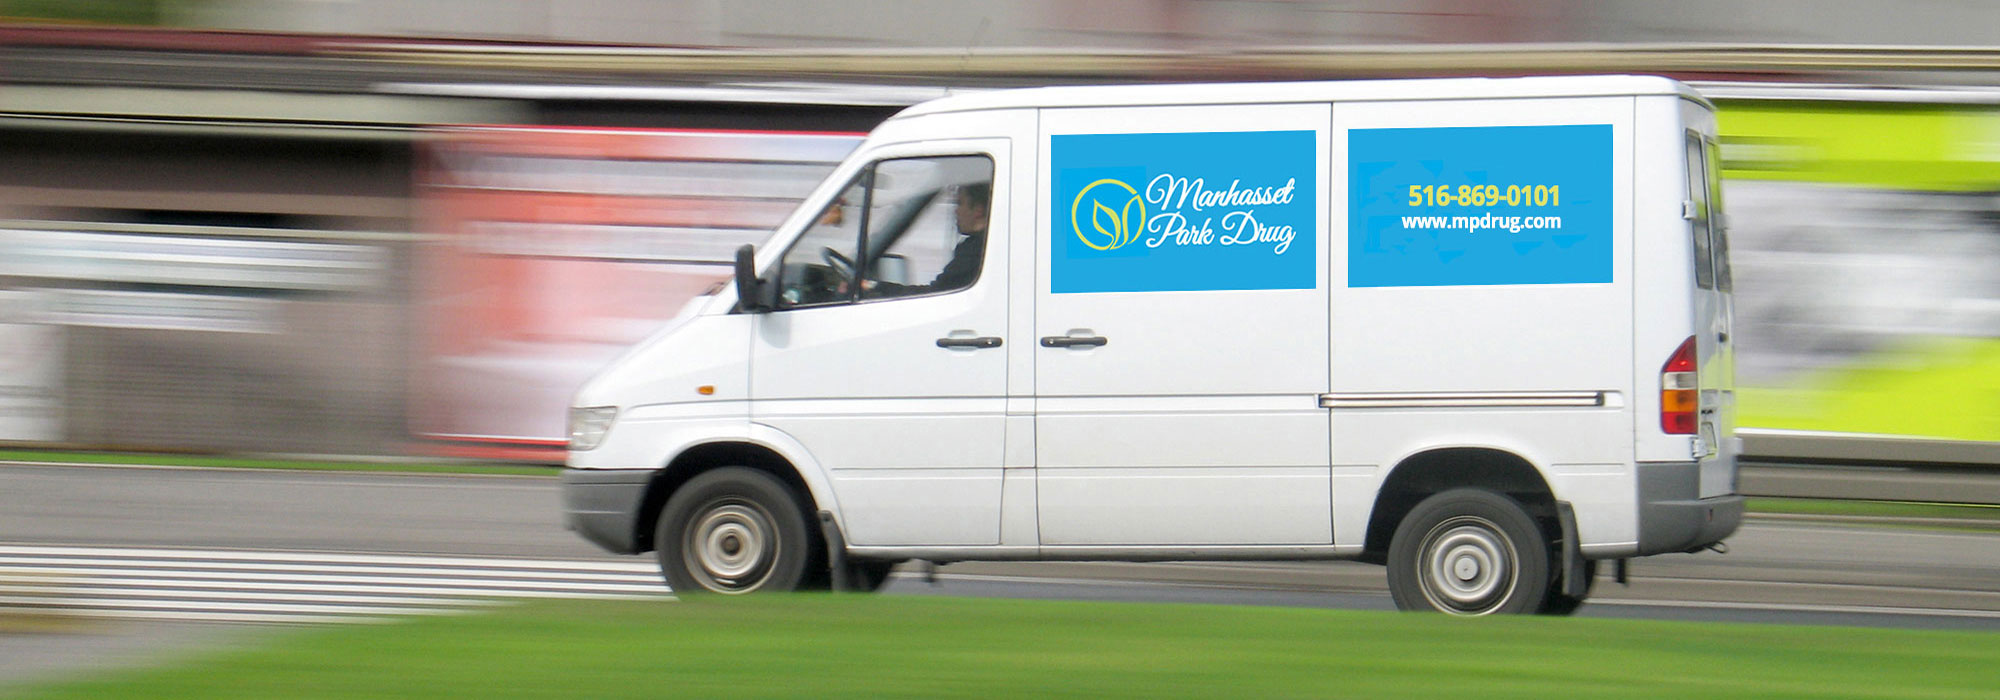 delivery van for manhasset park drug